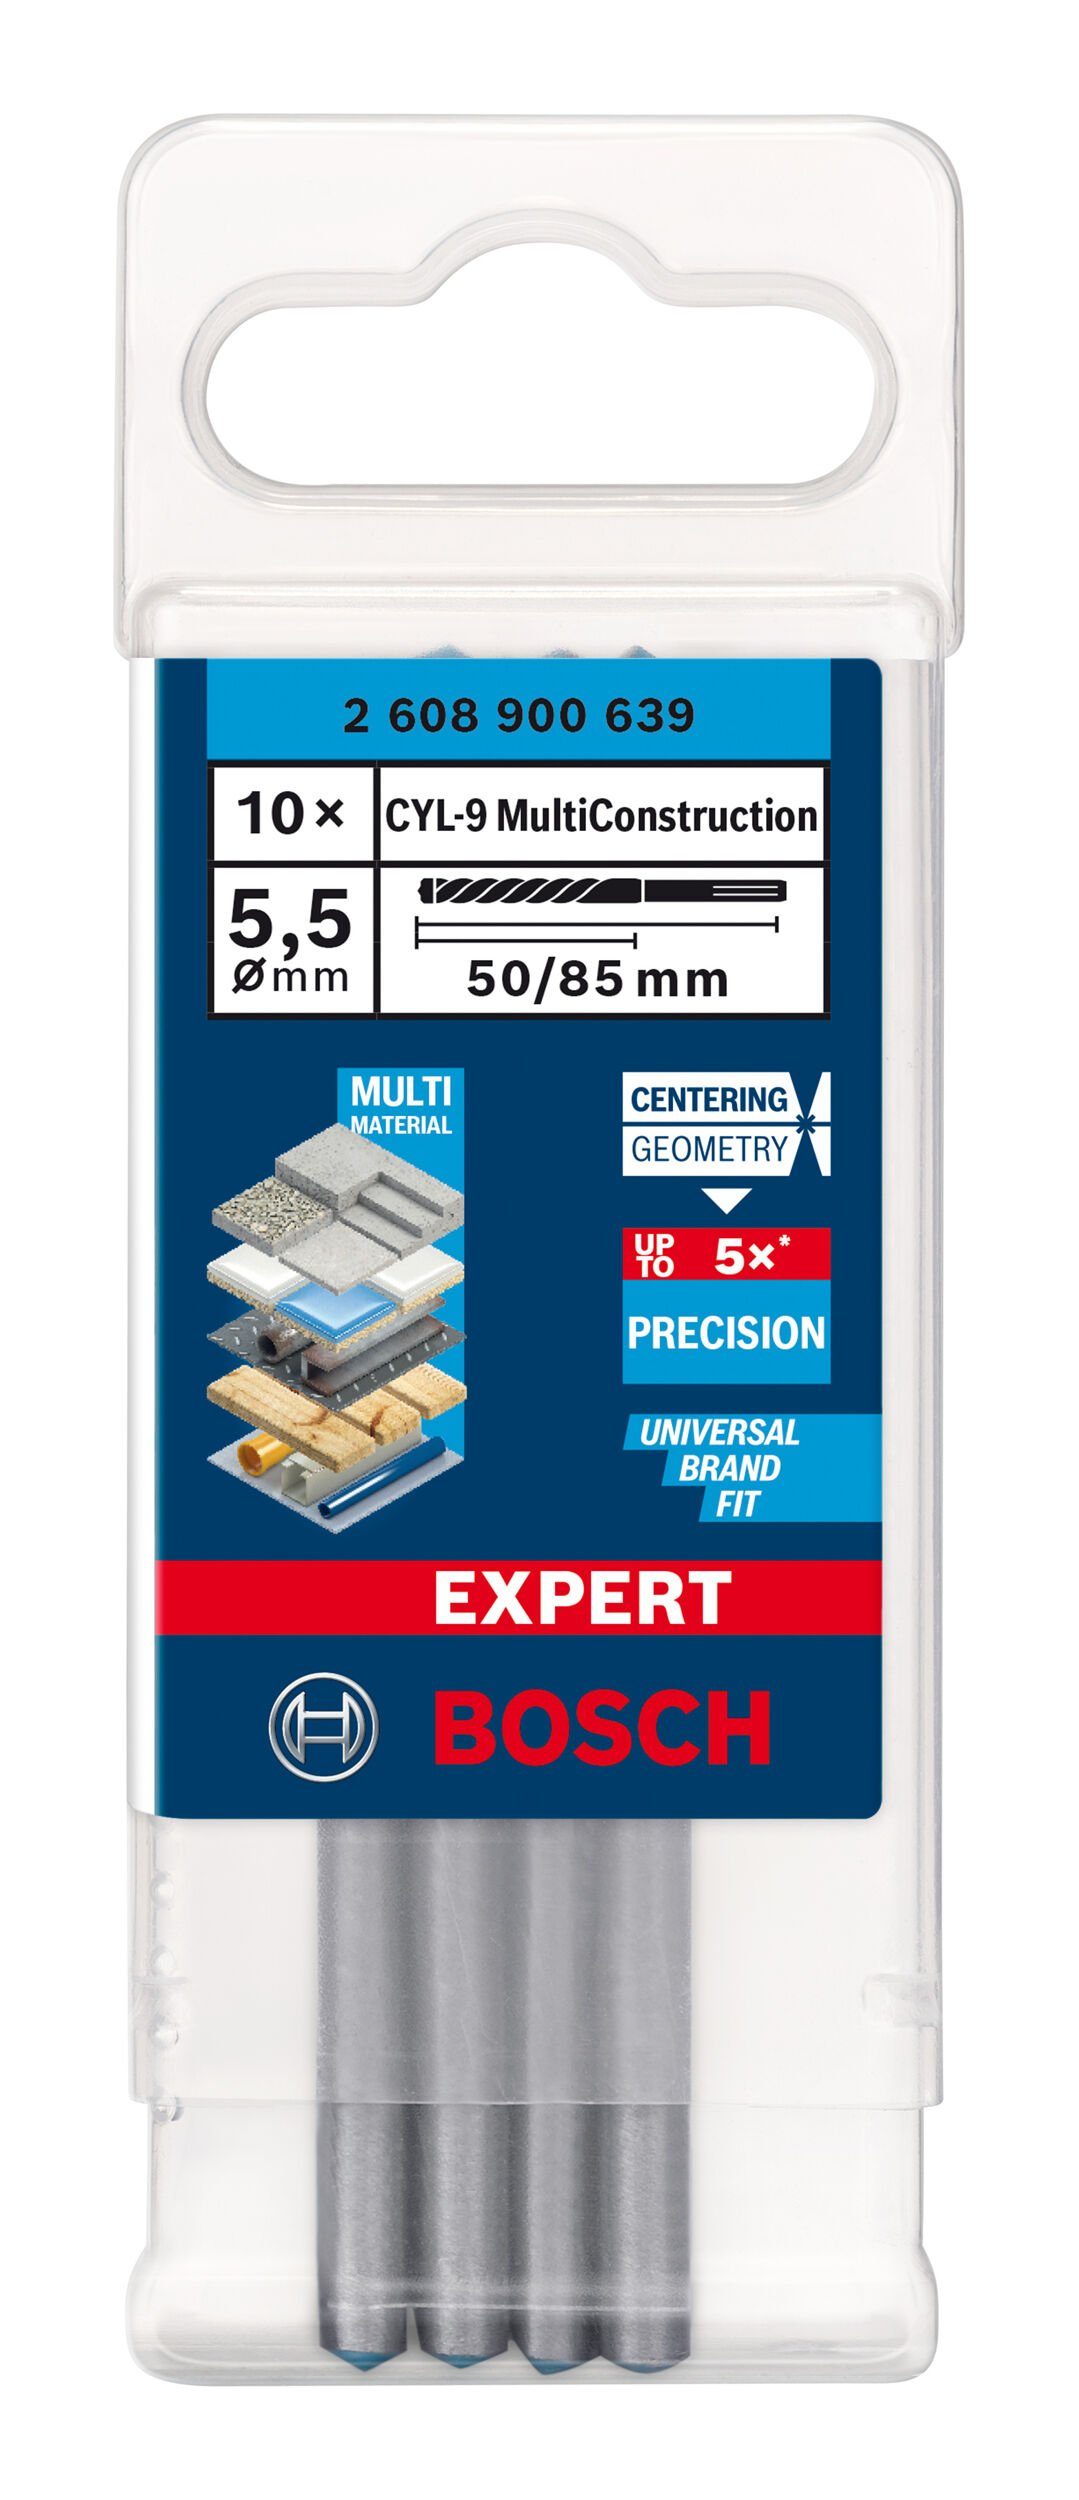 Expert BOSCH mm x 85 5,5 (10 Multi x MultiConstruction, CYL-9 Construction Expert 10er-Pack 50 - Stück), CYL-9 Universalbohrer -